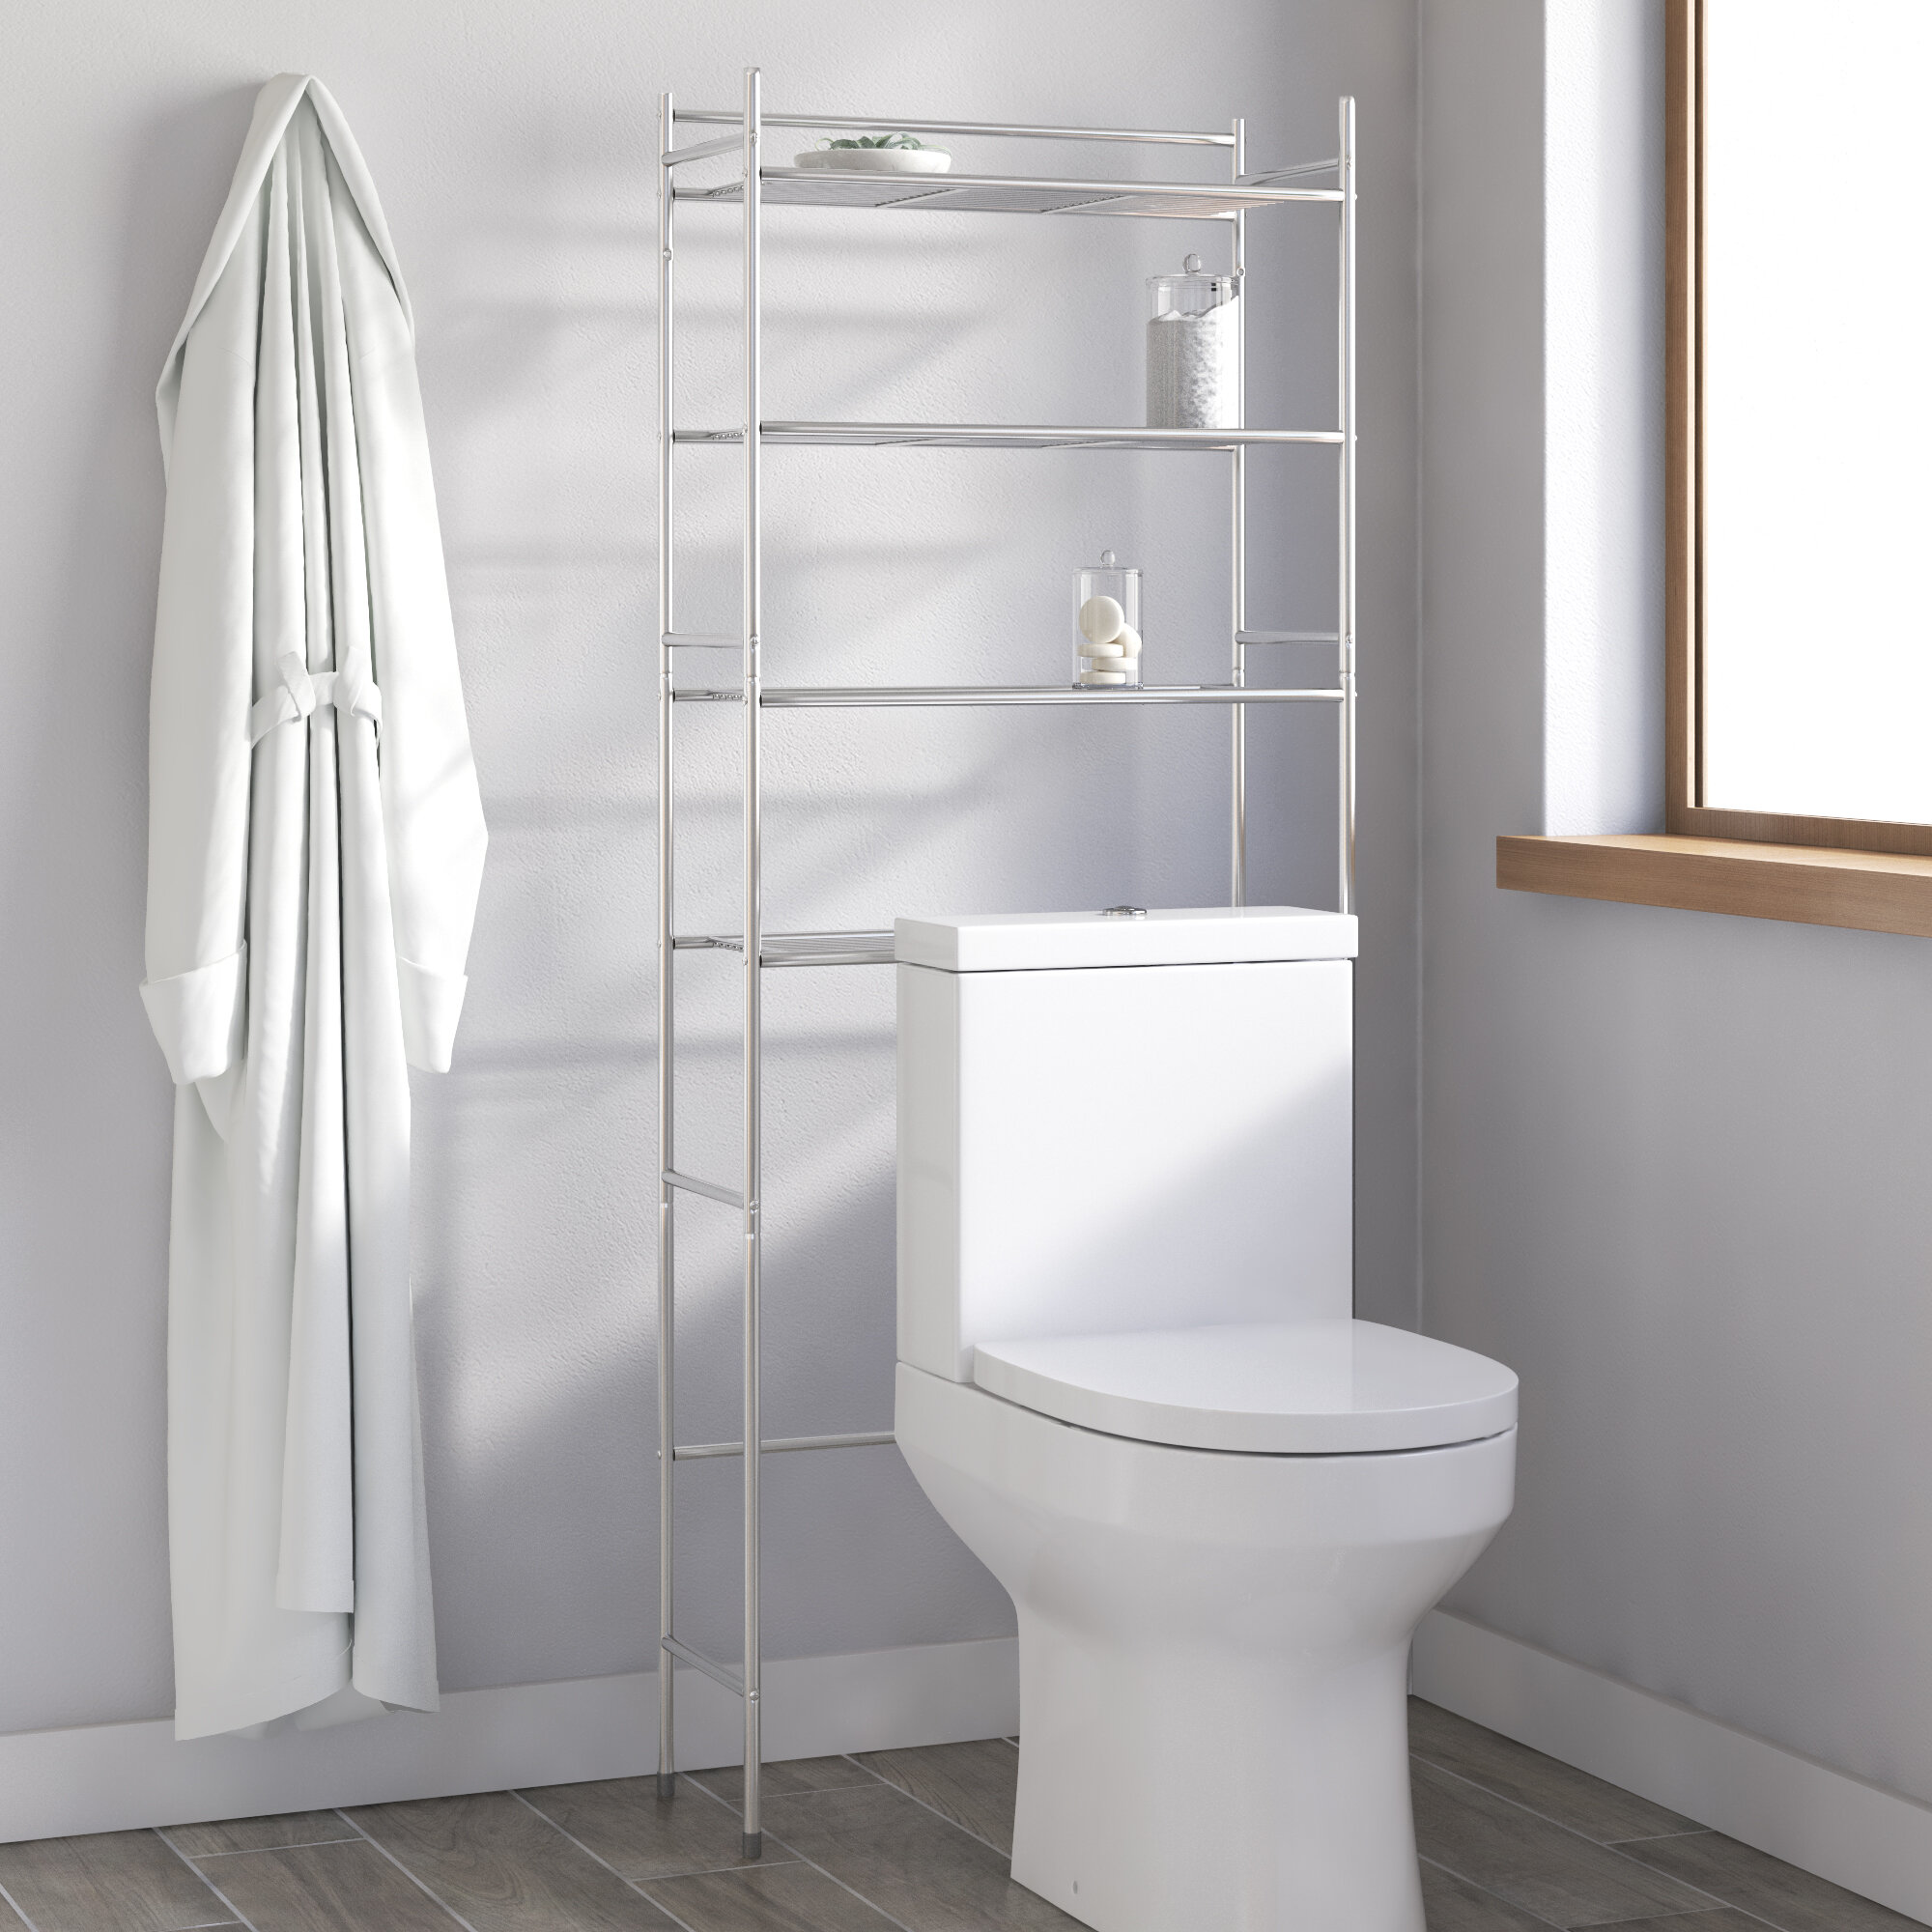  DR.IRON Industrial Bathroom Shelves Over Toilet,Wall Shelves  for Bathroom Decor Towel Racks with Towel Holder,2 Tier Bathroom Shelves  with Towel Bar(Black Bracket & Gray Shelves) : Home & Kitchen